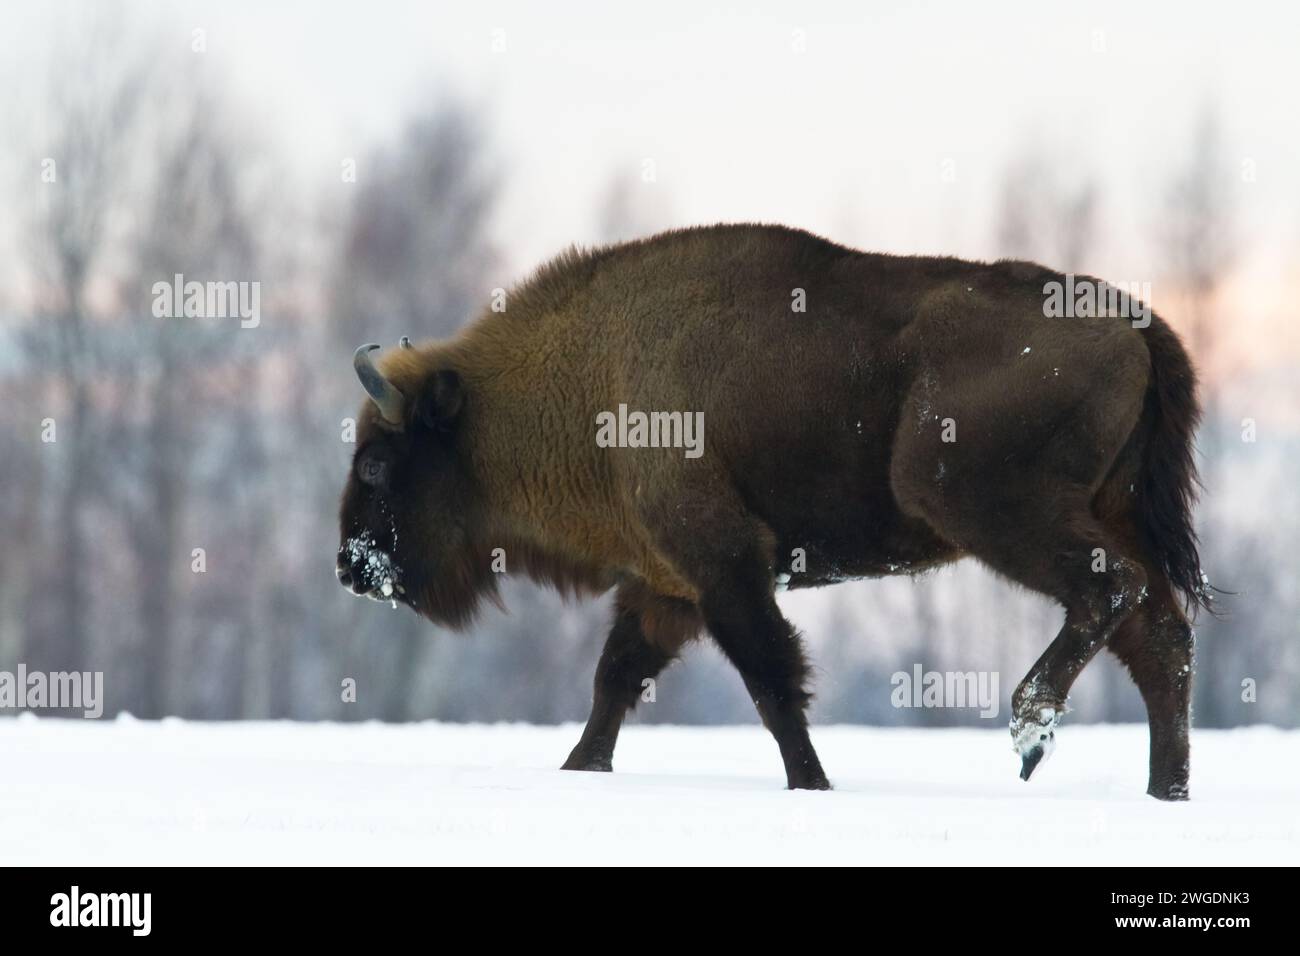 Säugetiere - wilde Natur Europäischer Bison Bison bonasus Wisent Herde auf dem winterlichen schneebedeckten Feld Nordostpolens, Europa Knyszynska Fore Stockfoto